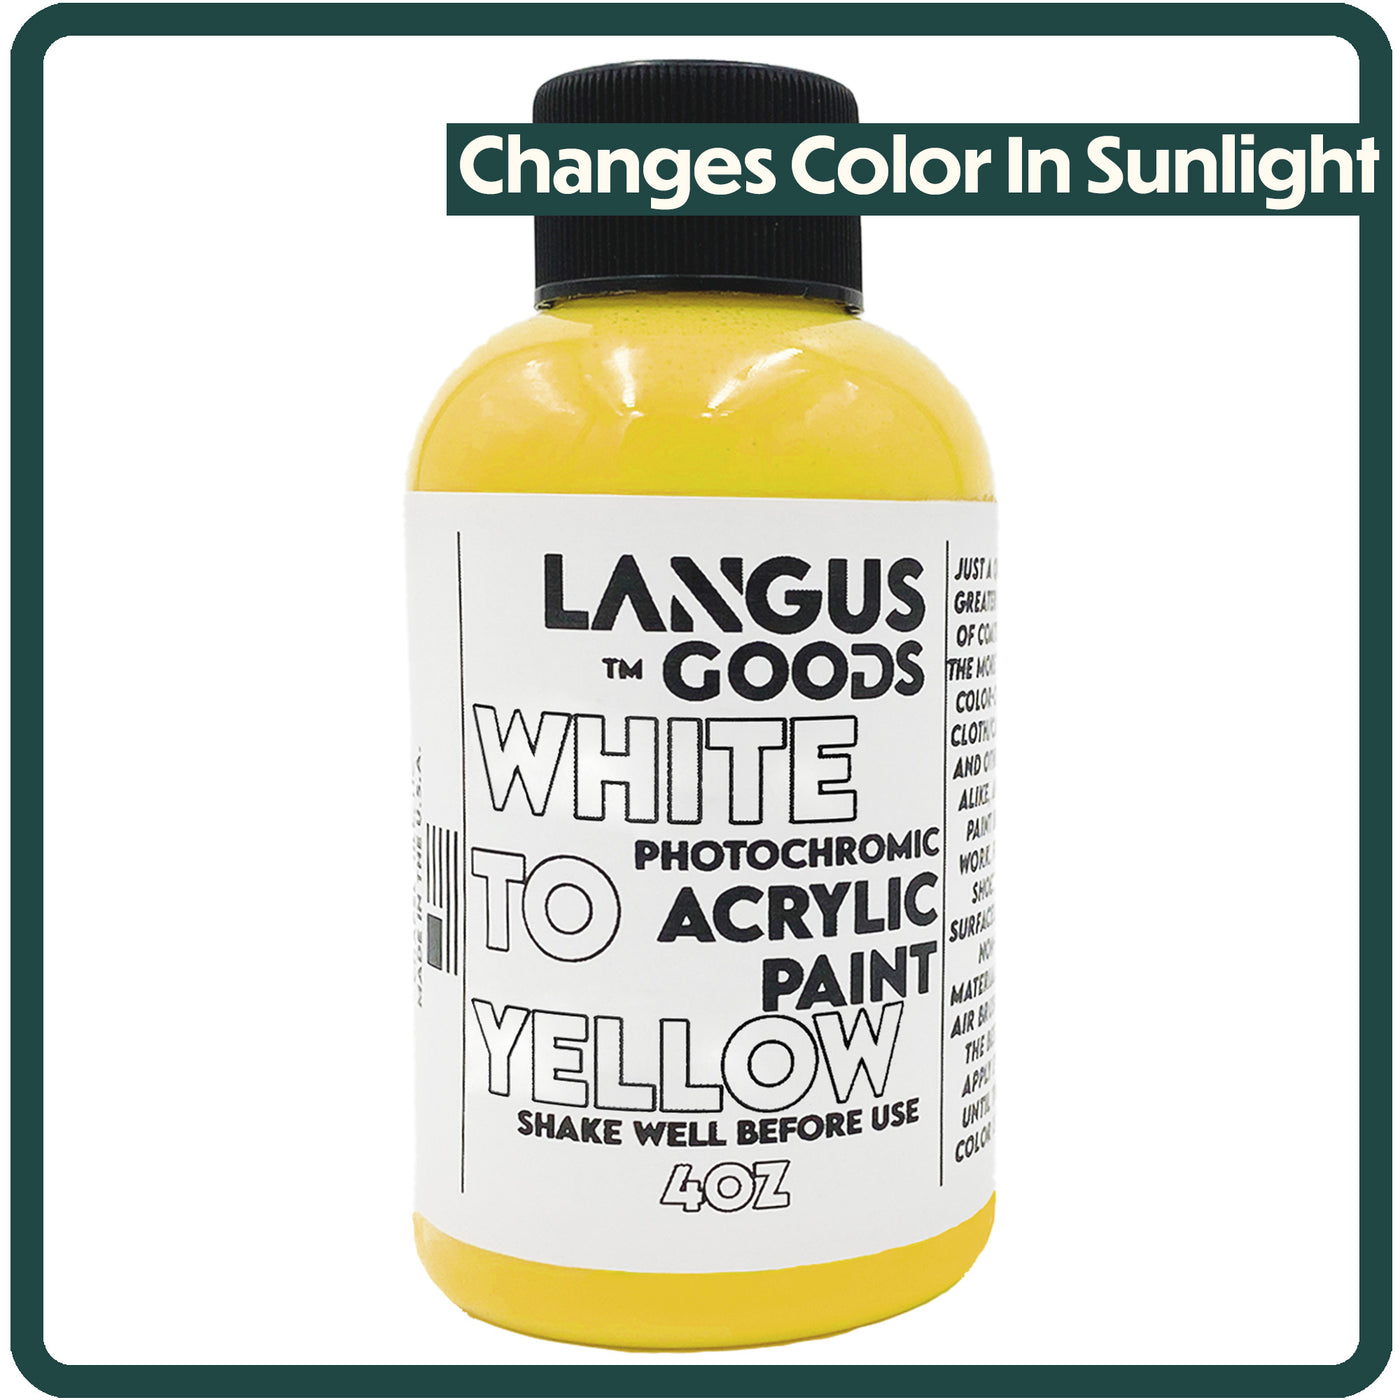 White to Yellow Photochromic Fabric & Airbrush Paint